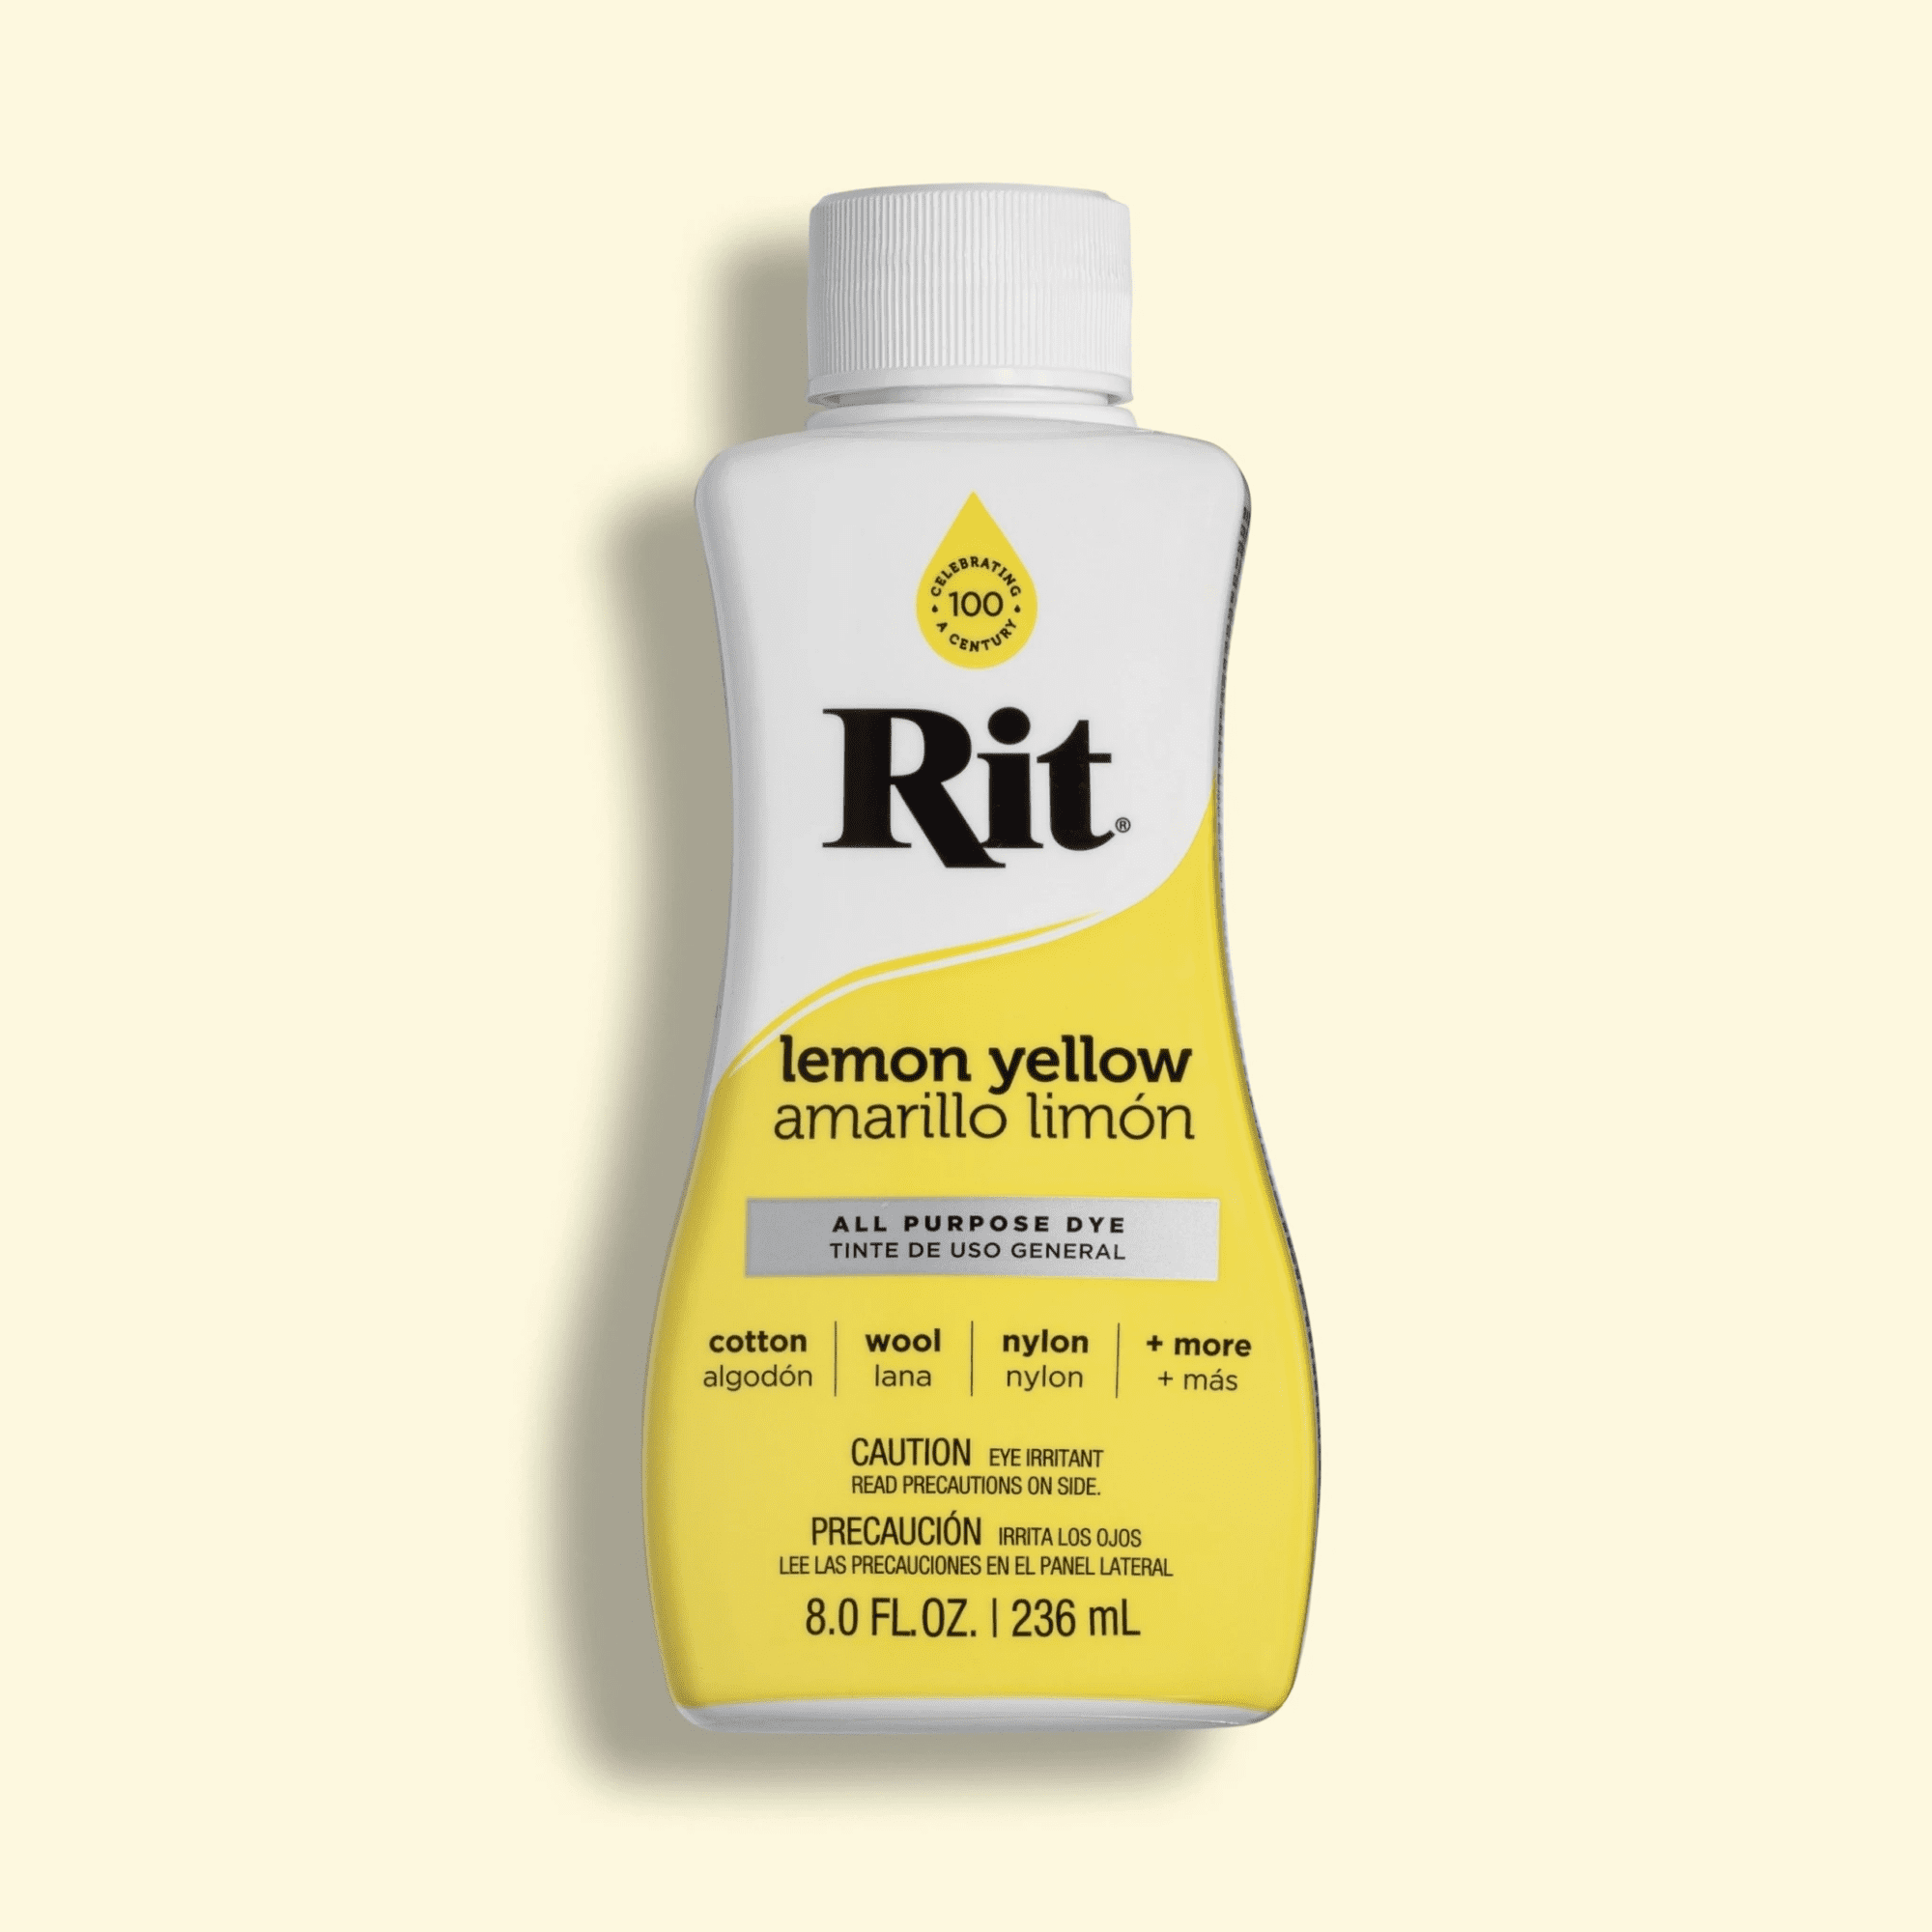 Rit All Purpose Dye, Lemon Yellow - 8.0 fl oz